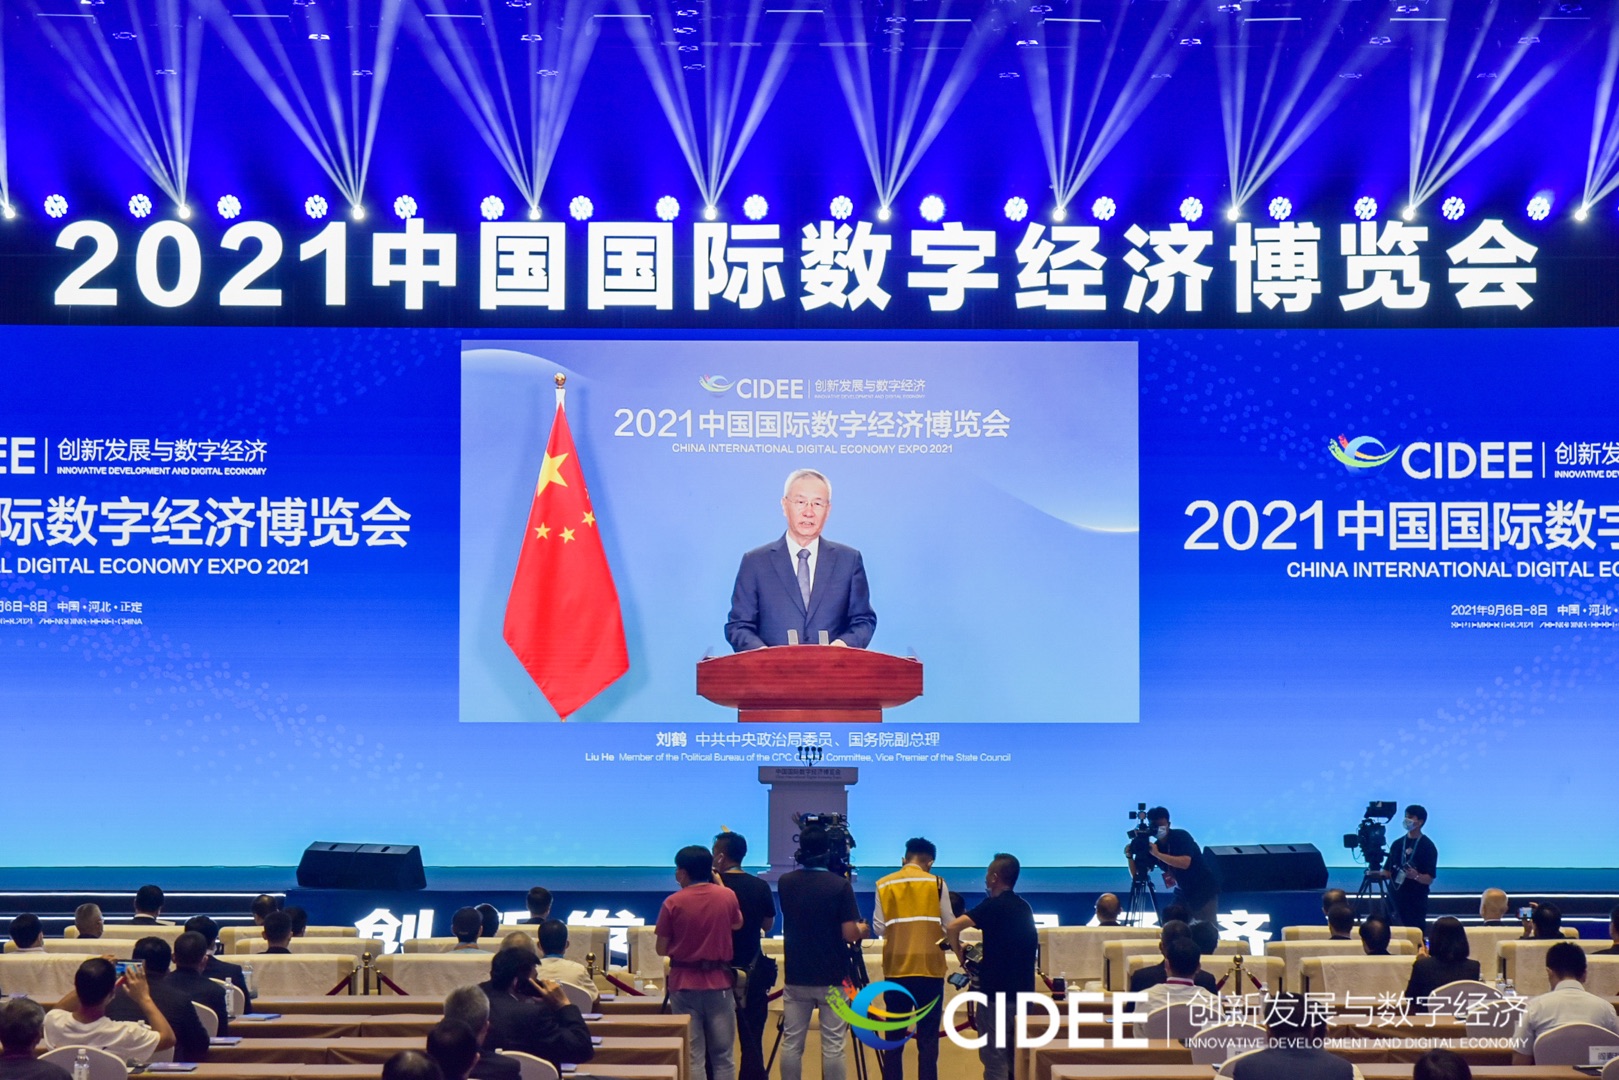 刘震董事长接受焦点访谈采访并应邀参加中国国际数字经济博览会开幕式